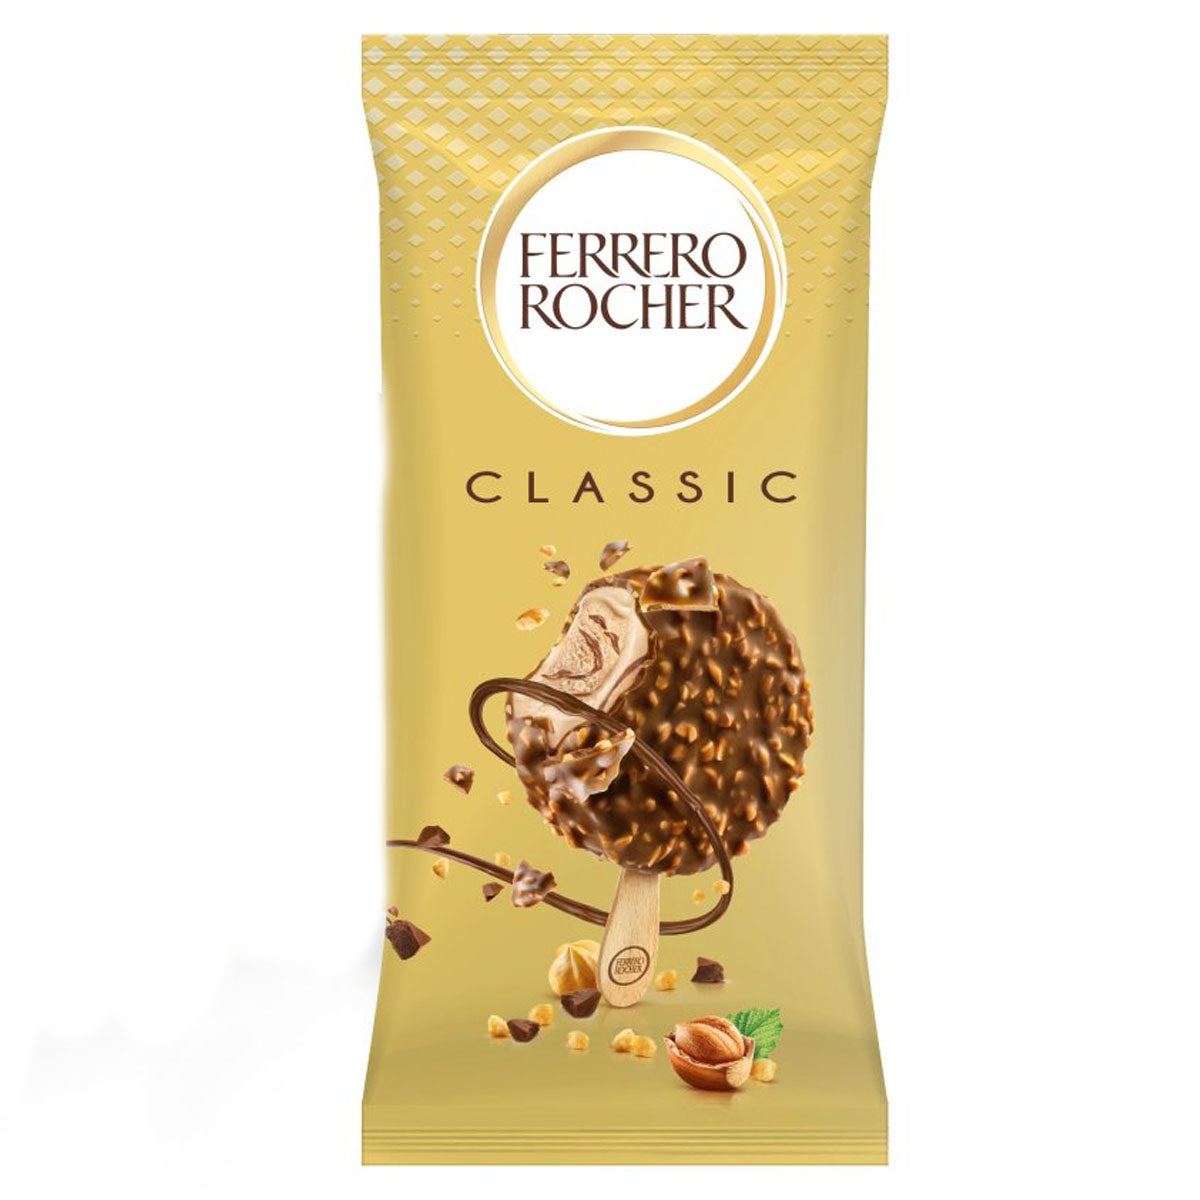 Ferrero Rocher - Classic Ice Cream Stick - 70ml.